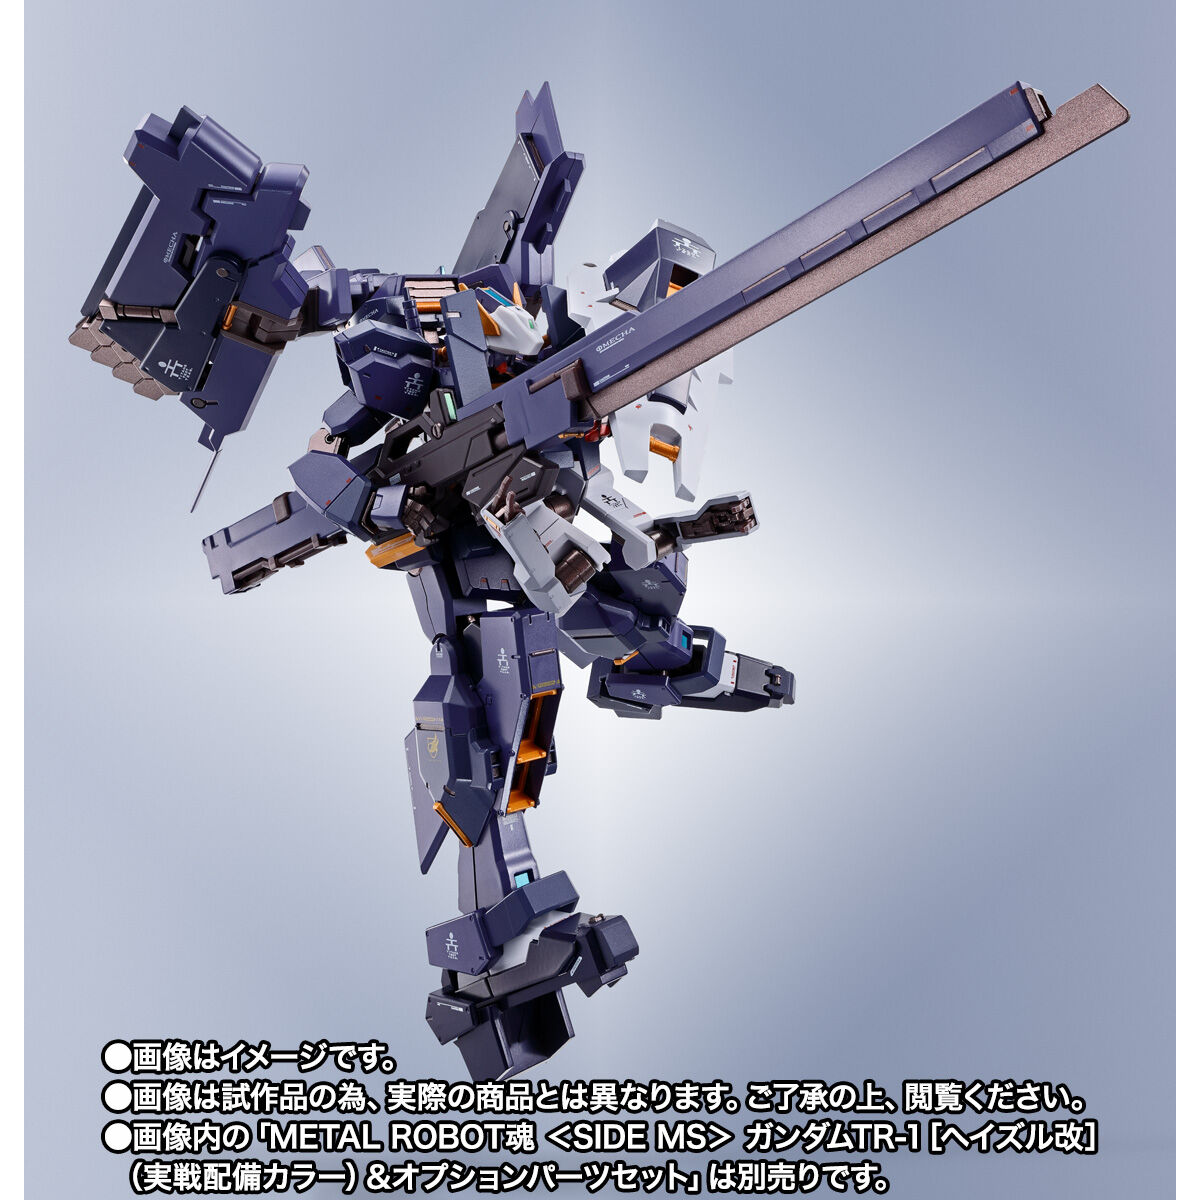 METAL ROBOT魂 ガンダムtr-1ヘイズル改&オプションパーツセット - 模型